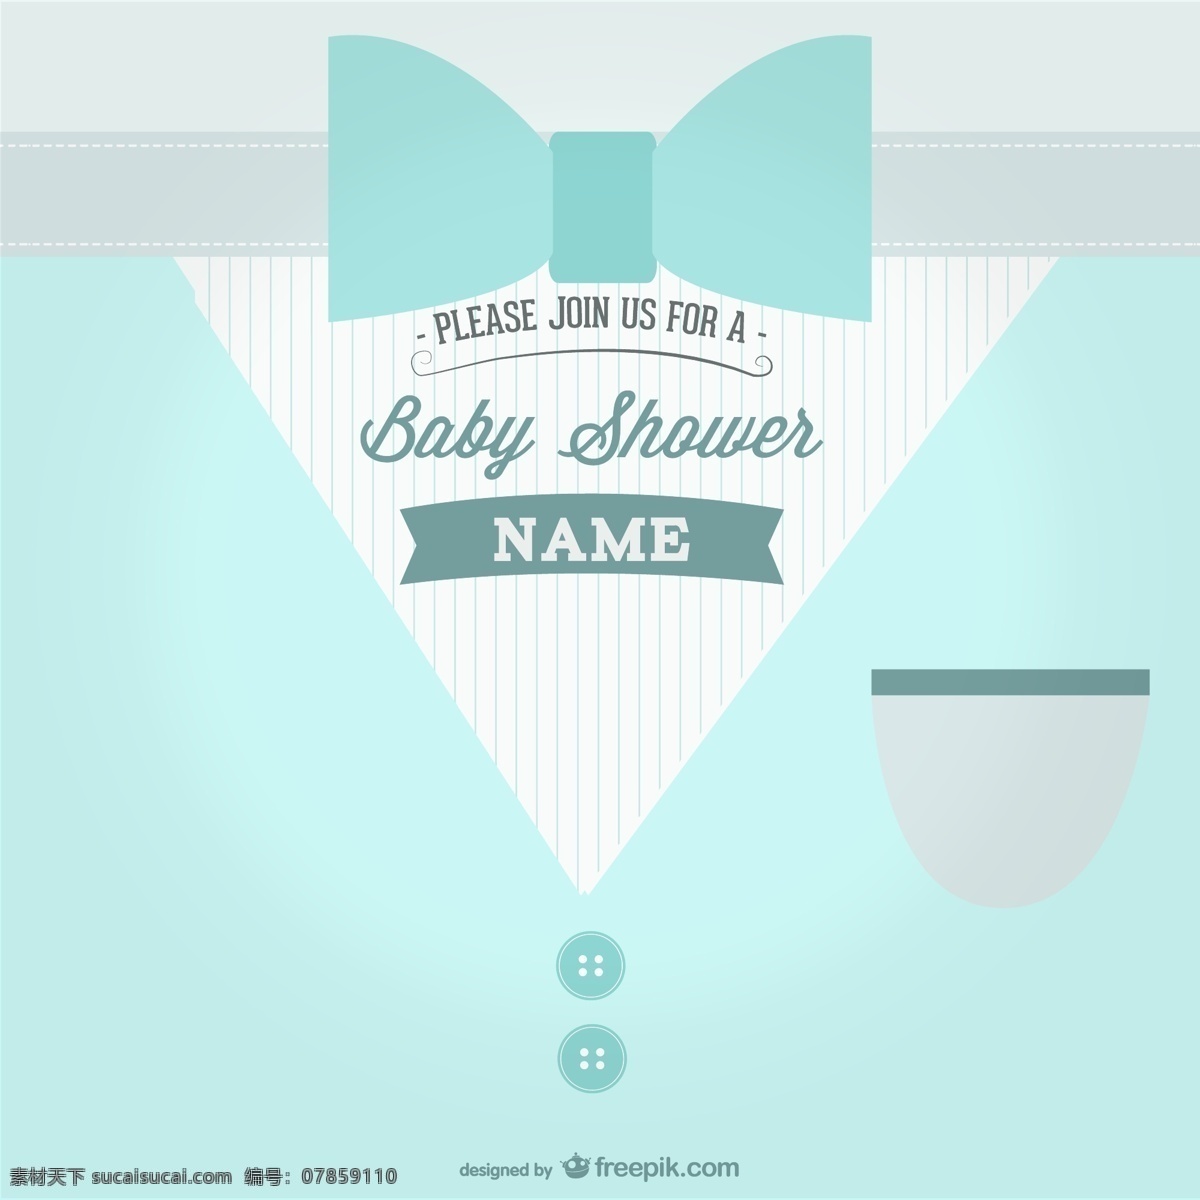 婴儿派对主题 婴儿 派对 卡片 婴儿淋浴 模板 文字 弓 布局 优雅 甜美 领带 西装 信息 蝴蝶结 淋浴 新生儿 婴儿卡 花式 青色 天蓝色